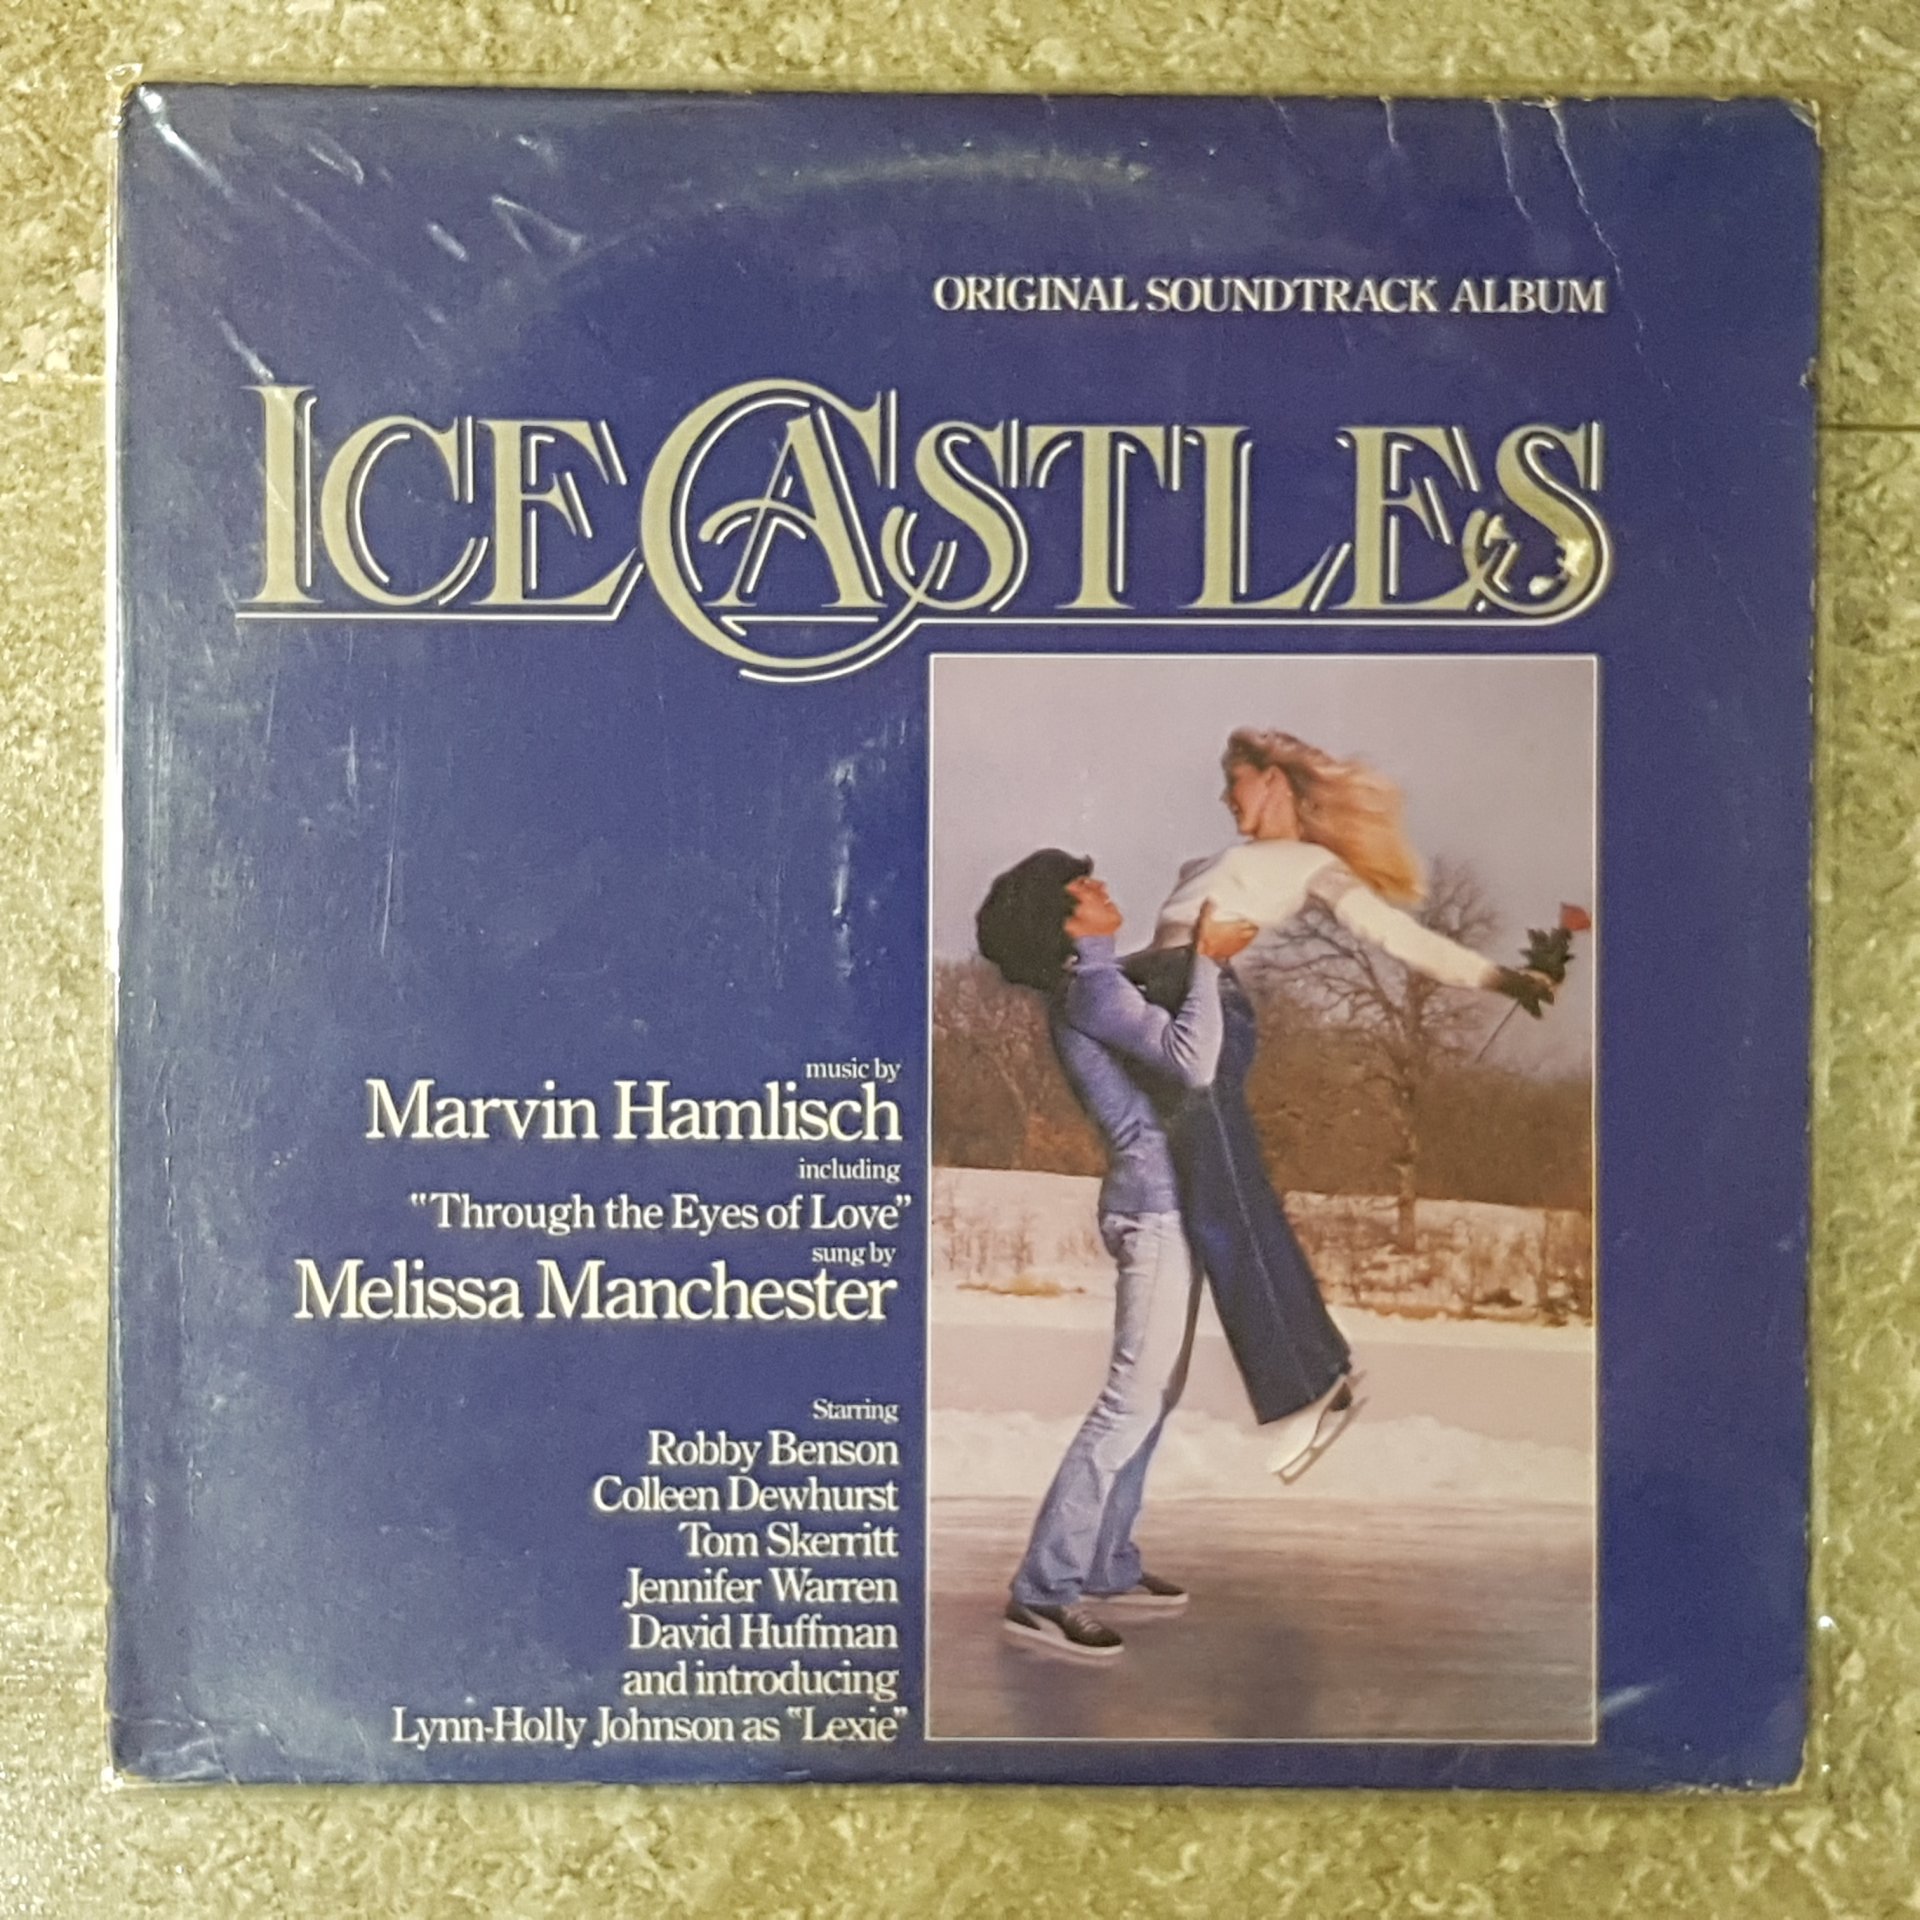 แผ่นเสียง Vinyl Records อัลบัม ICE CASTLES